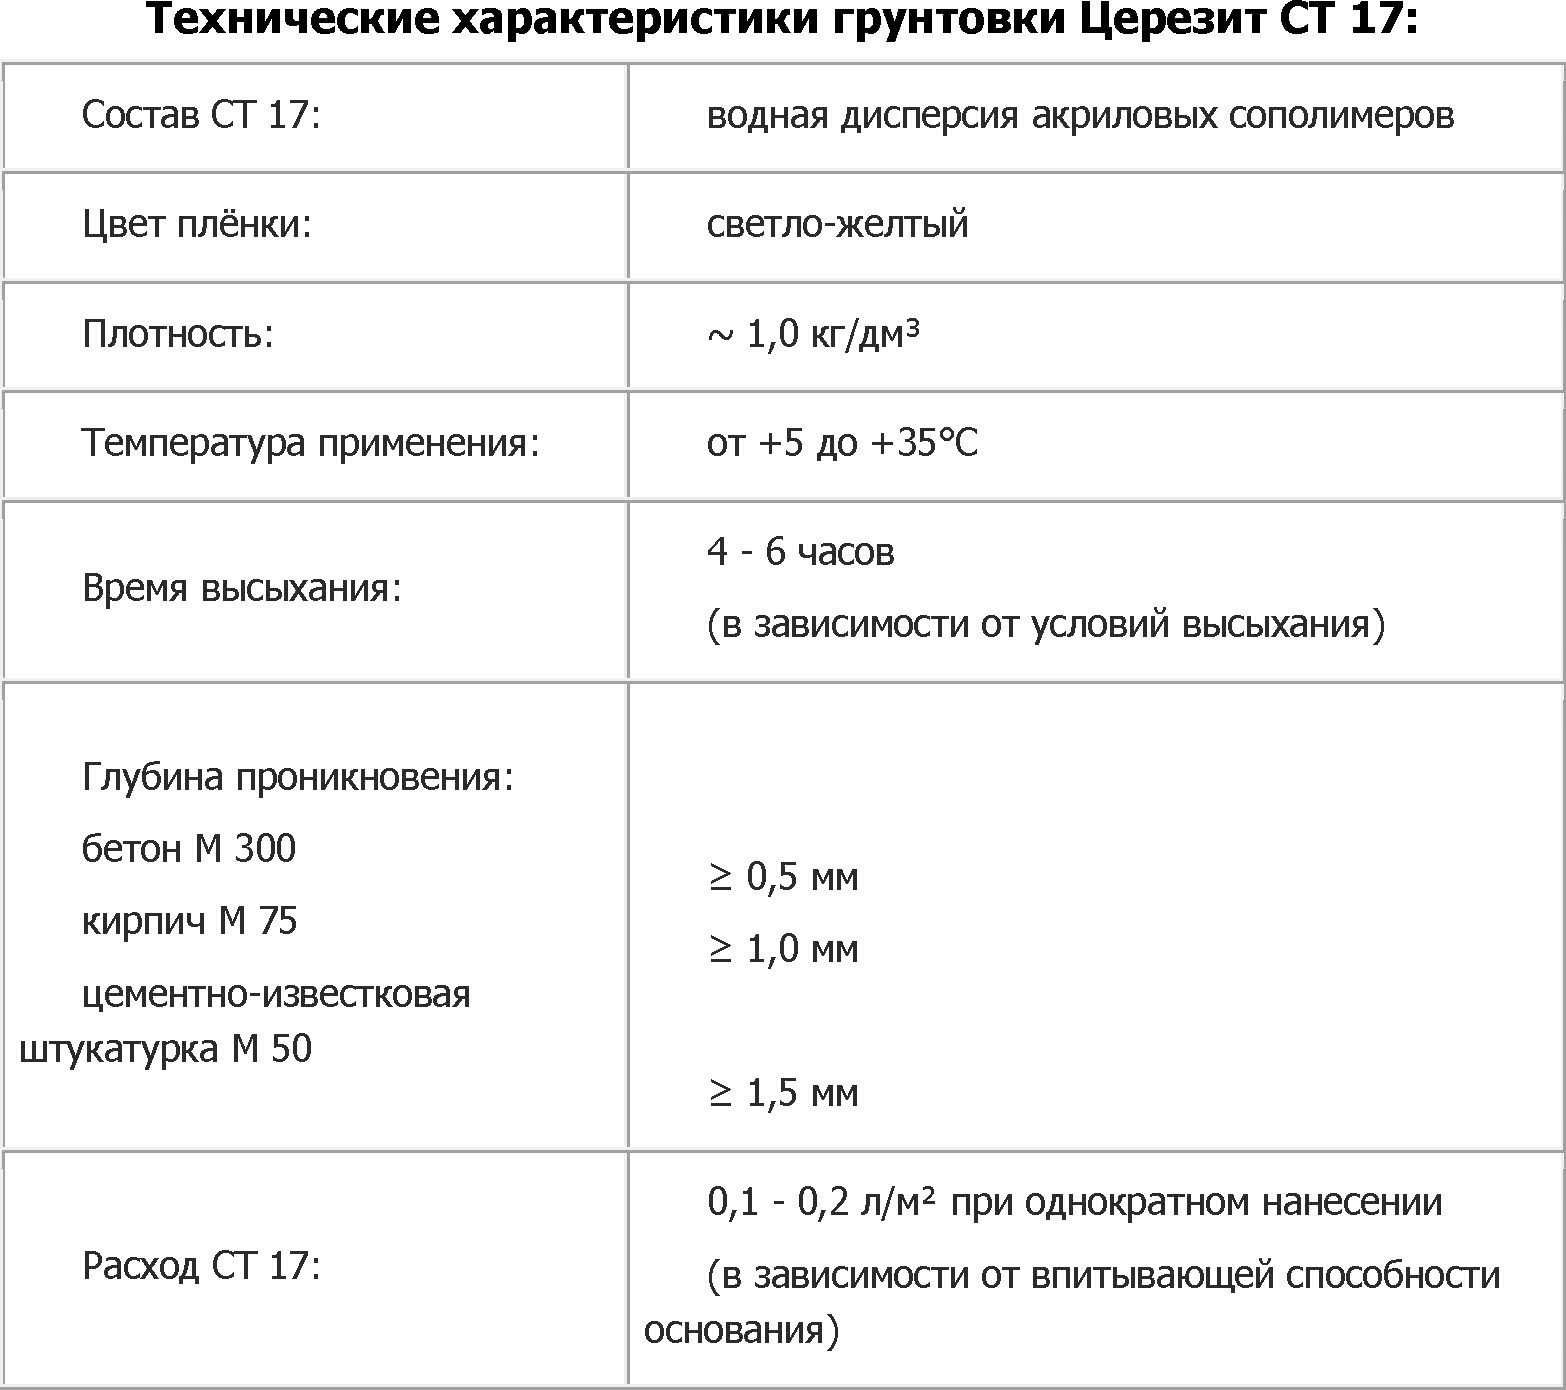 Технические характеристики грунтовки Церезит СТ 17